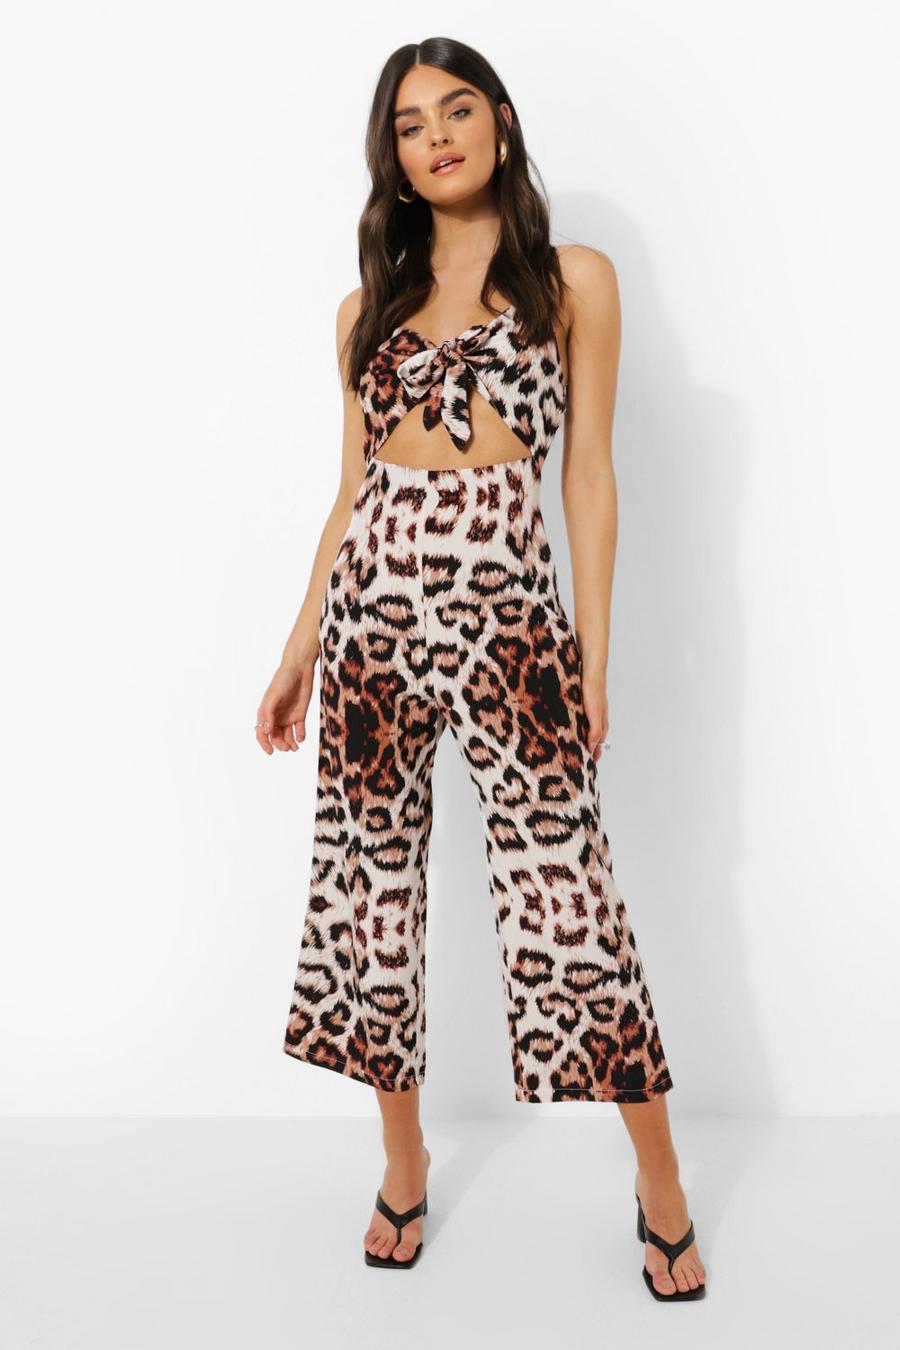 Zara Mono estampado de leopardo estilo fiesta Moda Pantalones Monos 